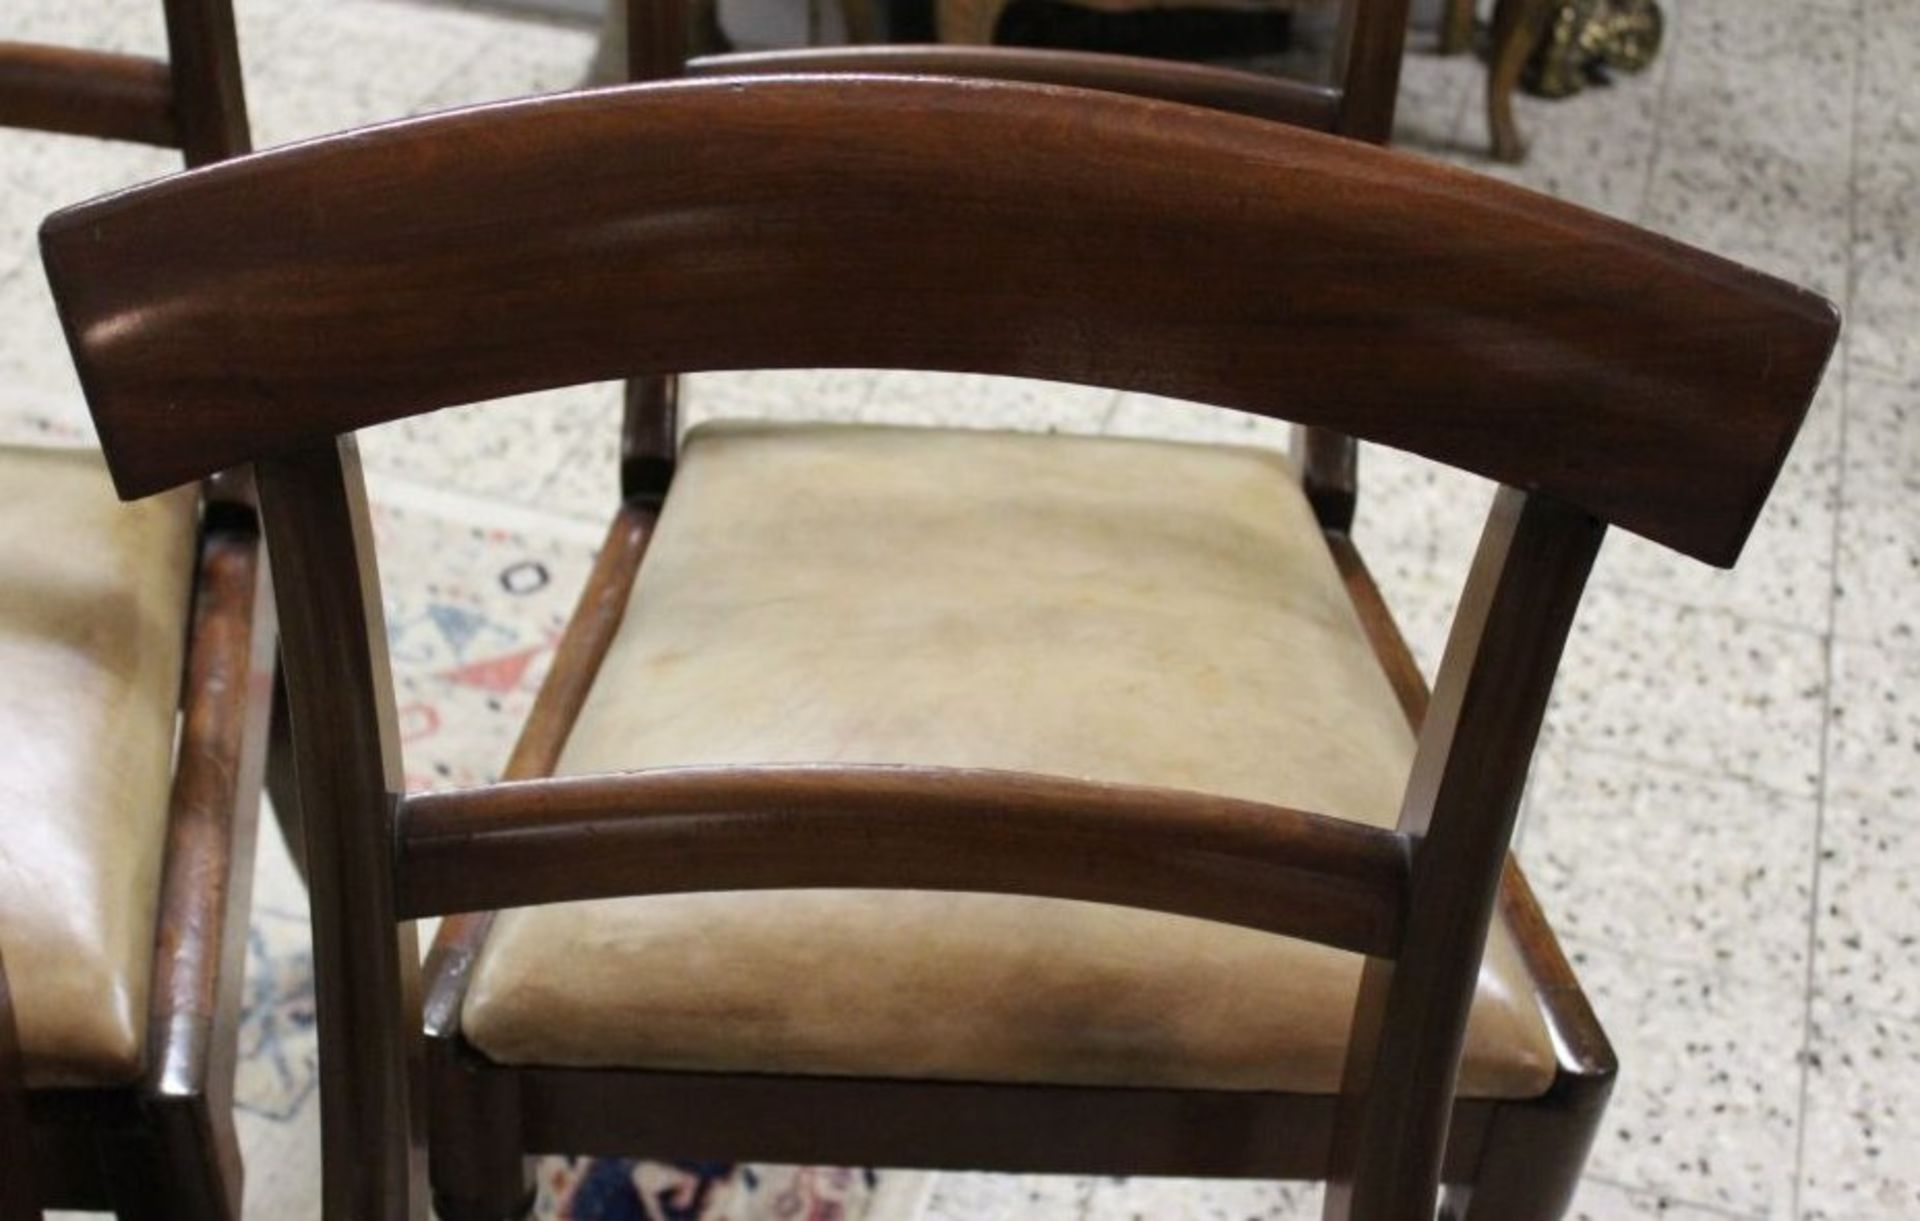 4x Biedermeier-Stühle, guter Zustand, lederbezogene Sitzfläche diese mit Gebrauchsspuren, H-86cm - Bild 3 aus 3